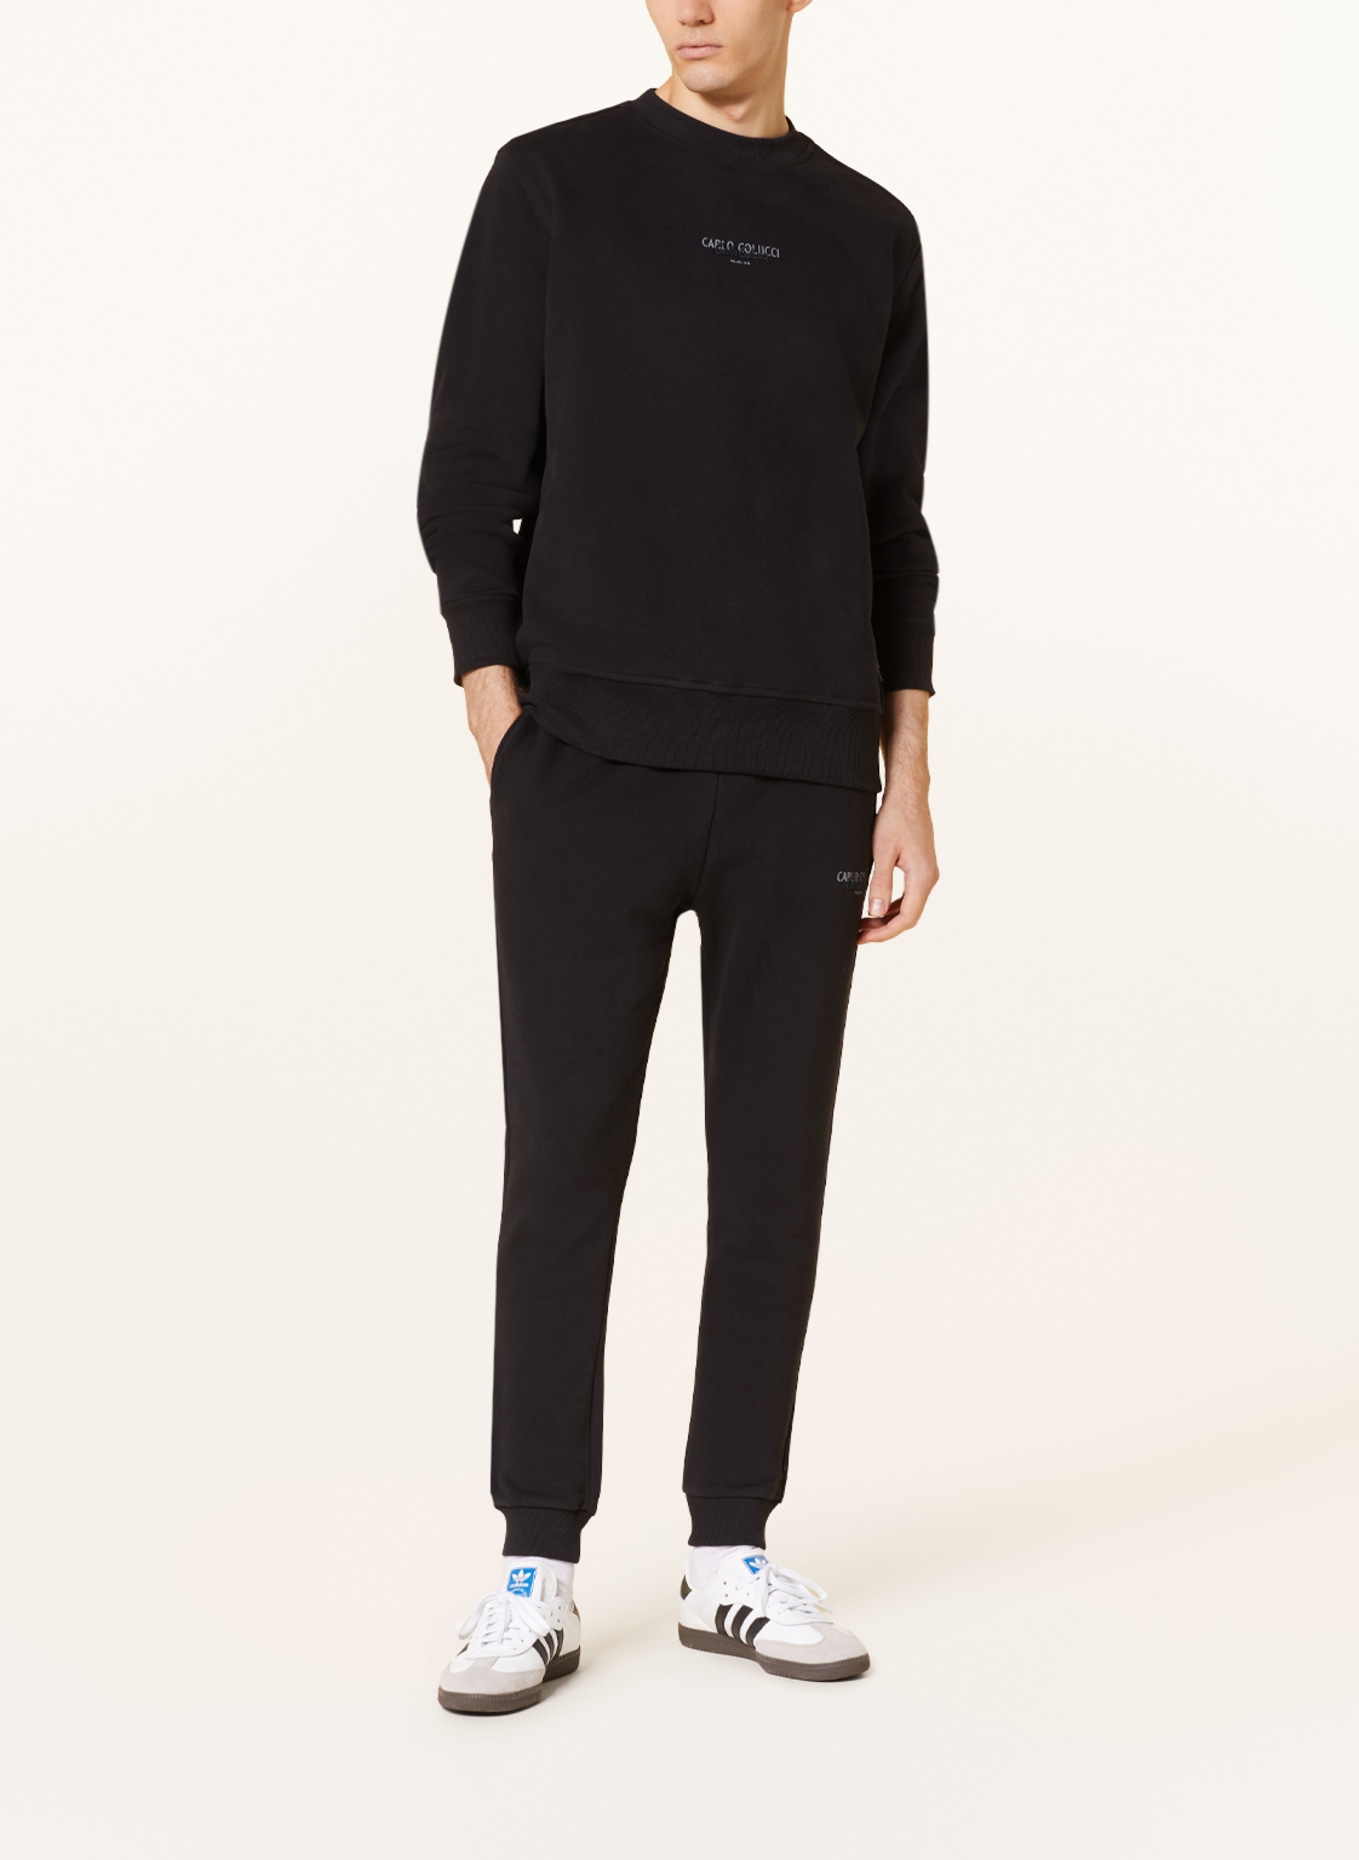 CARLO COLUCCI Sweatpants, Color: BLACK (Image 2)